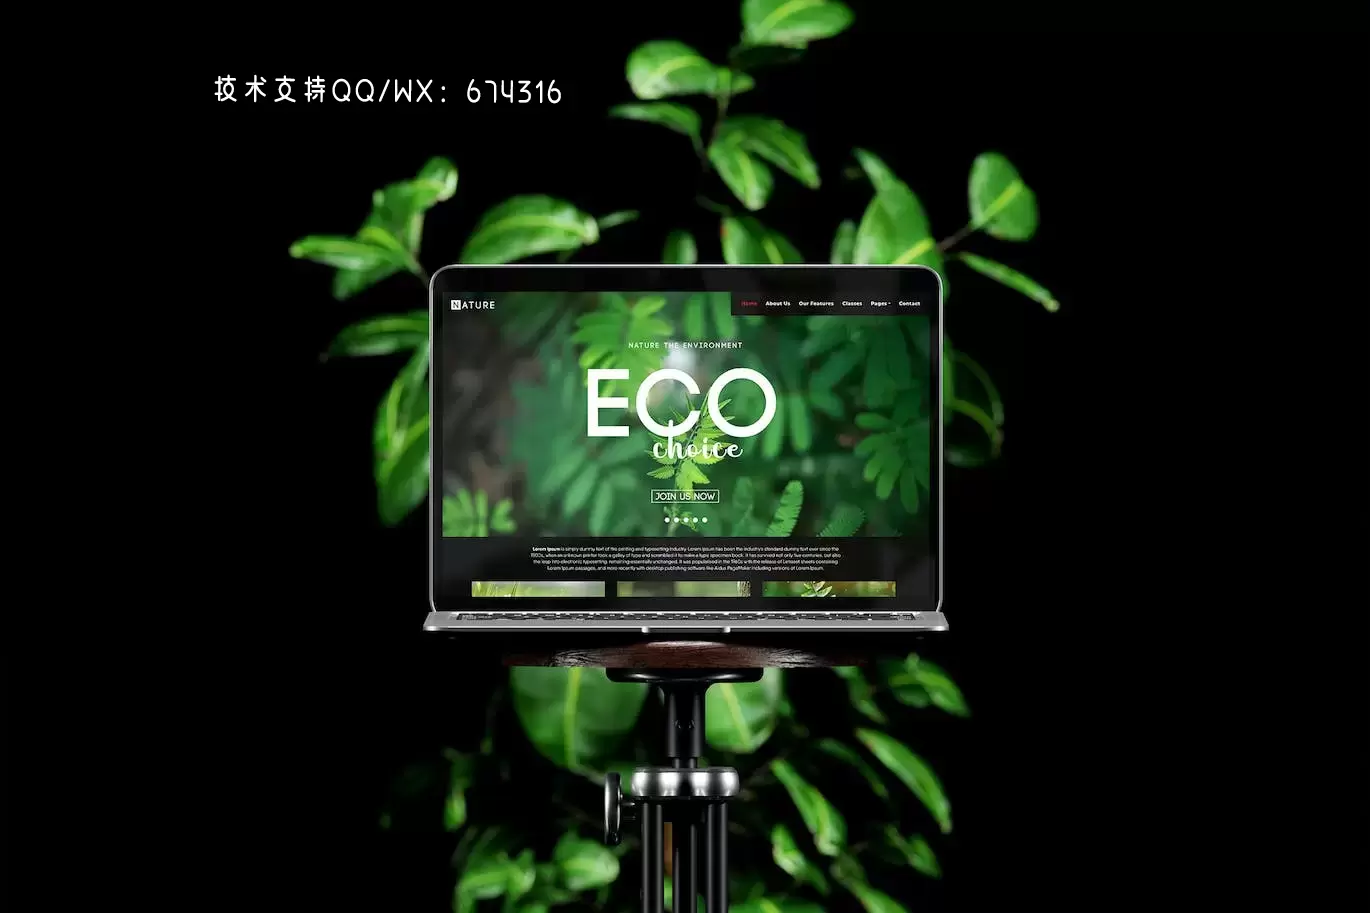 绿色植物场景笔记本电脑屏幕展示样机 (PSD)下载